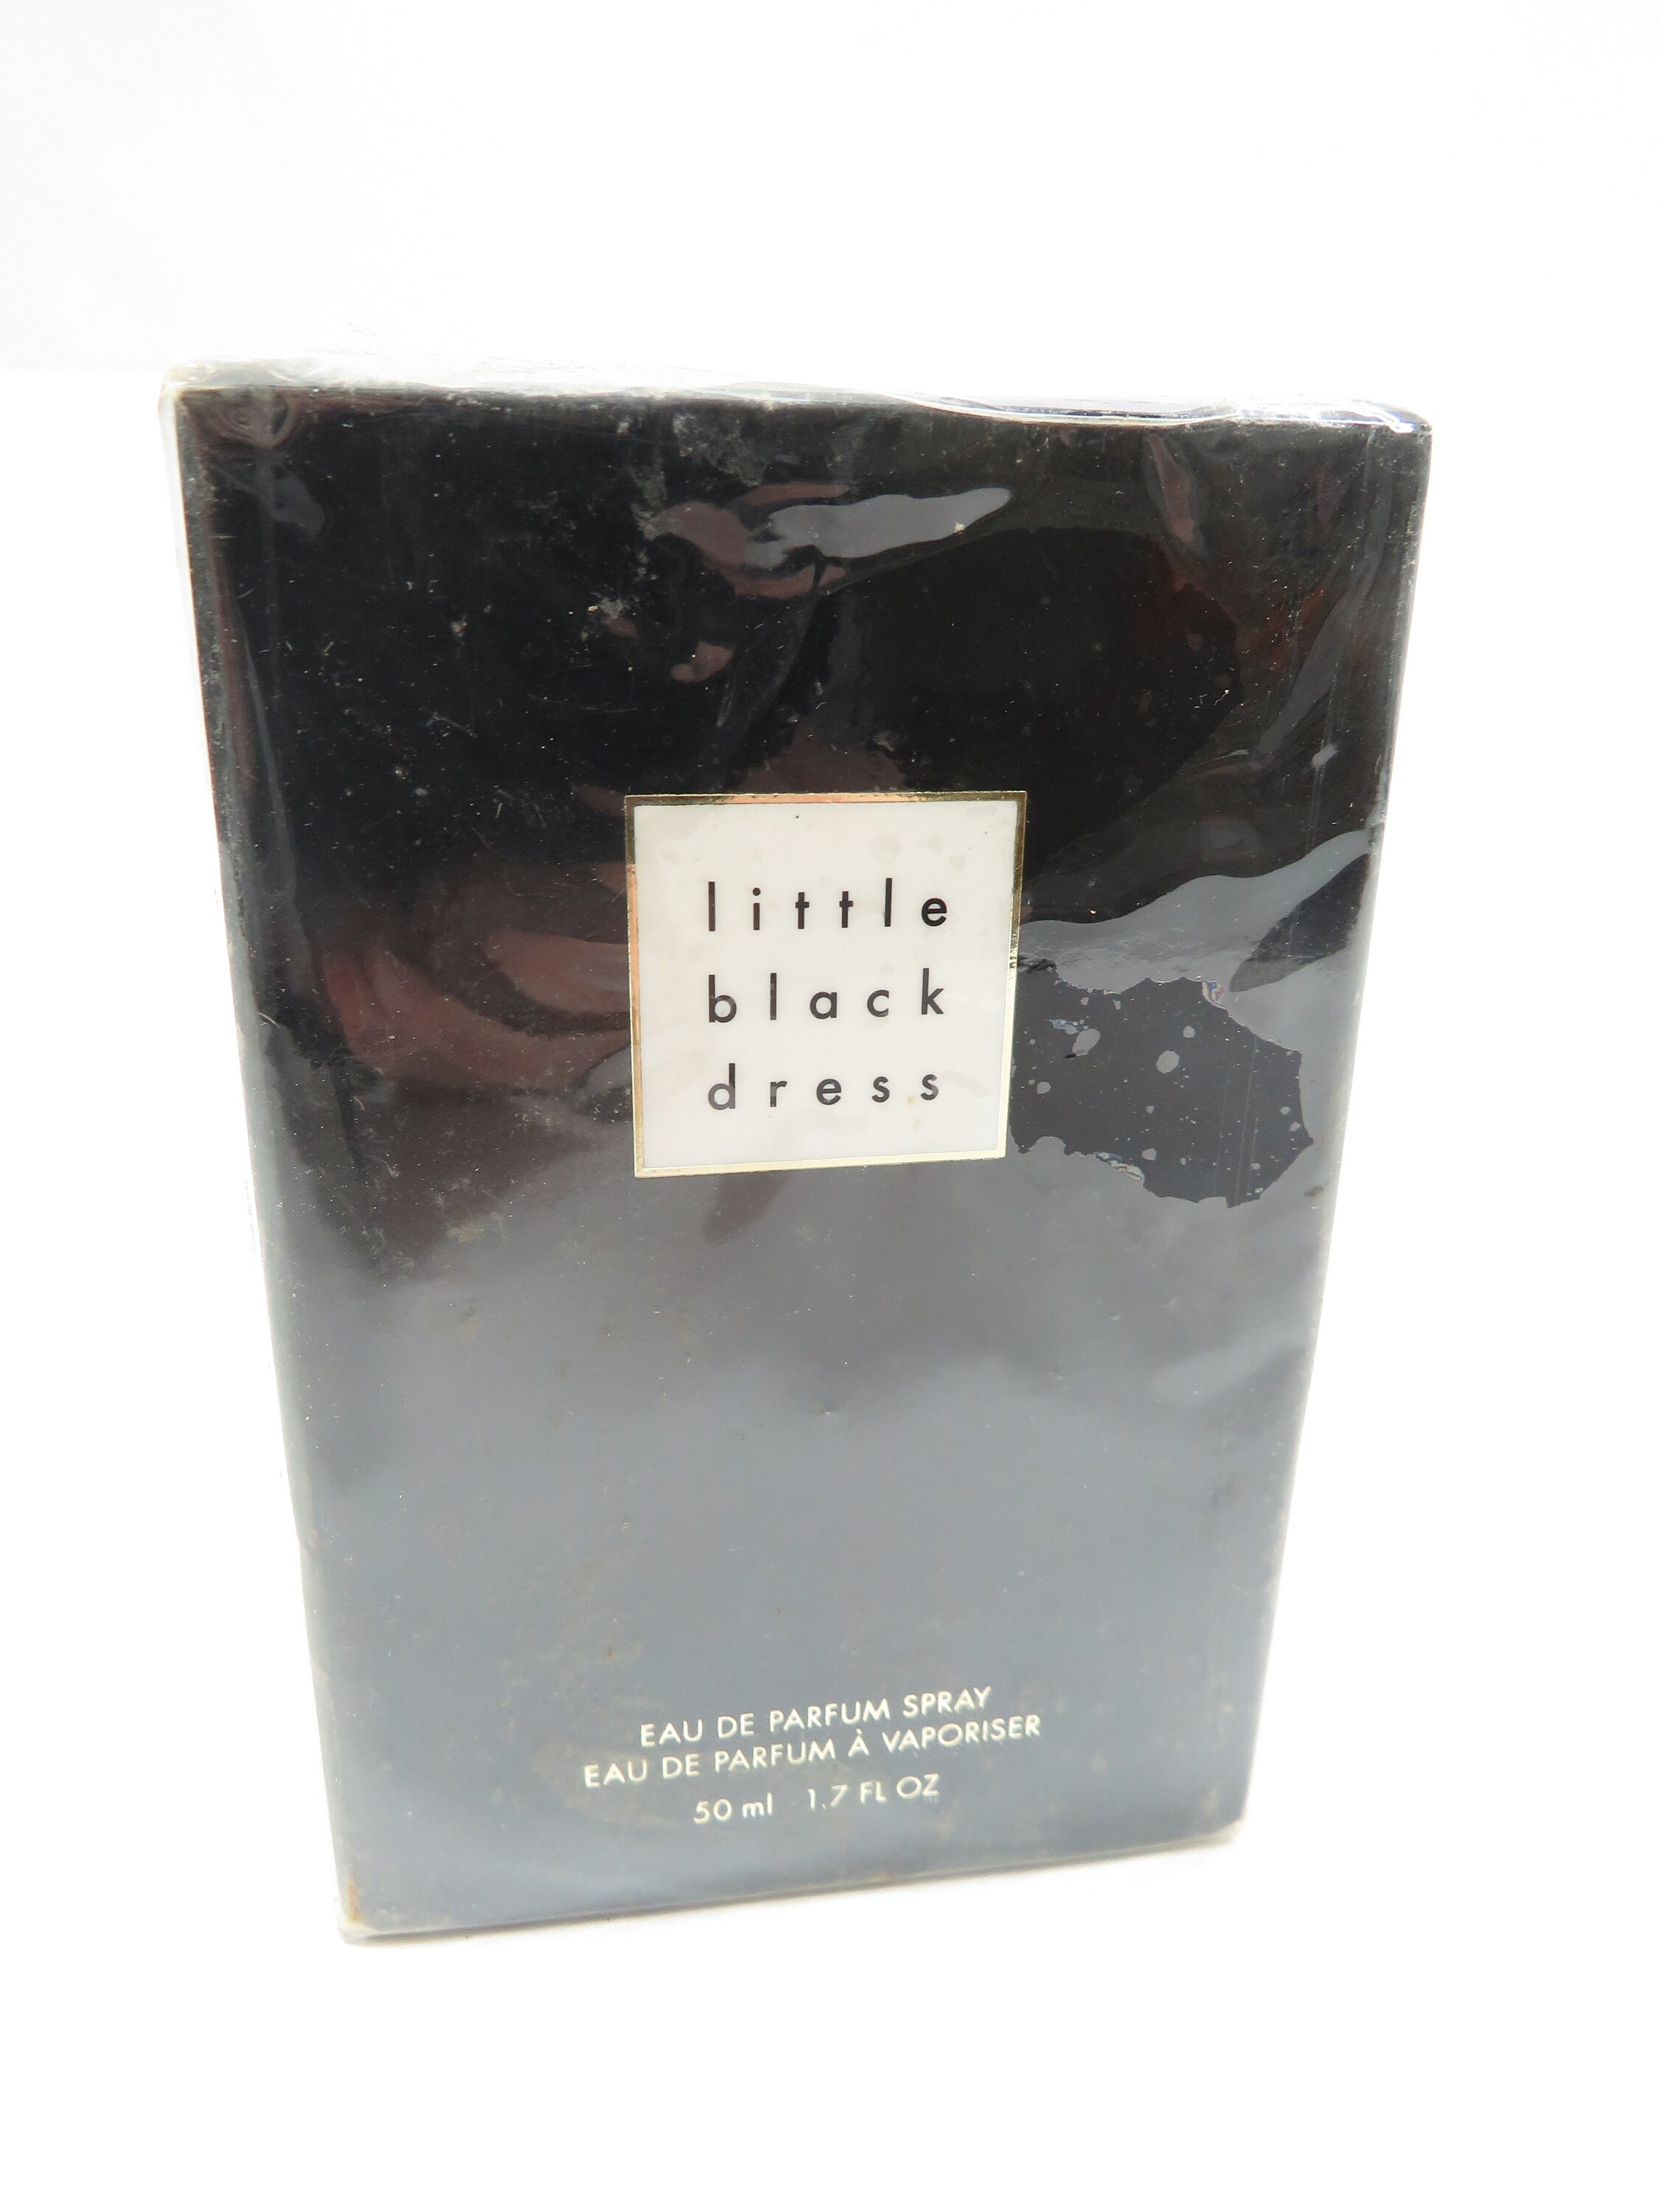 Avon Little Black Dress Eau de Parfum Spray 1.7 oz Size